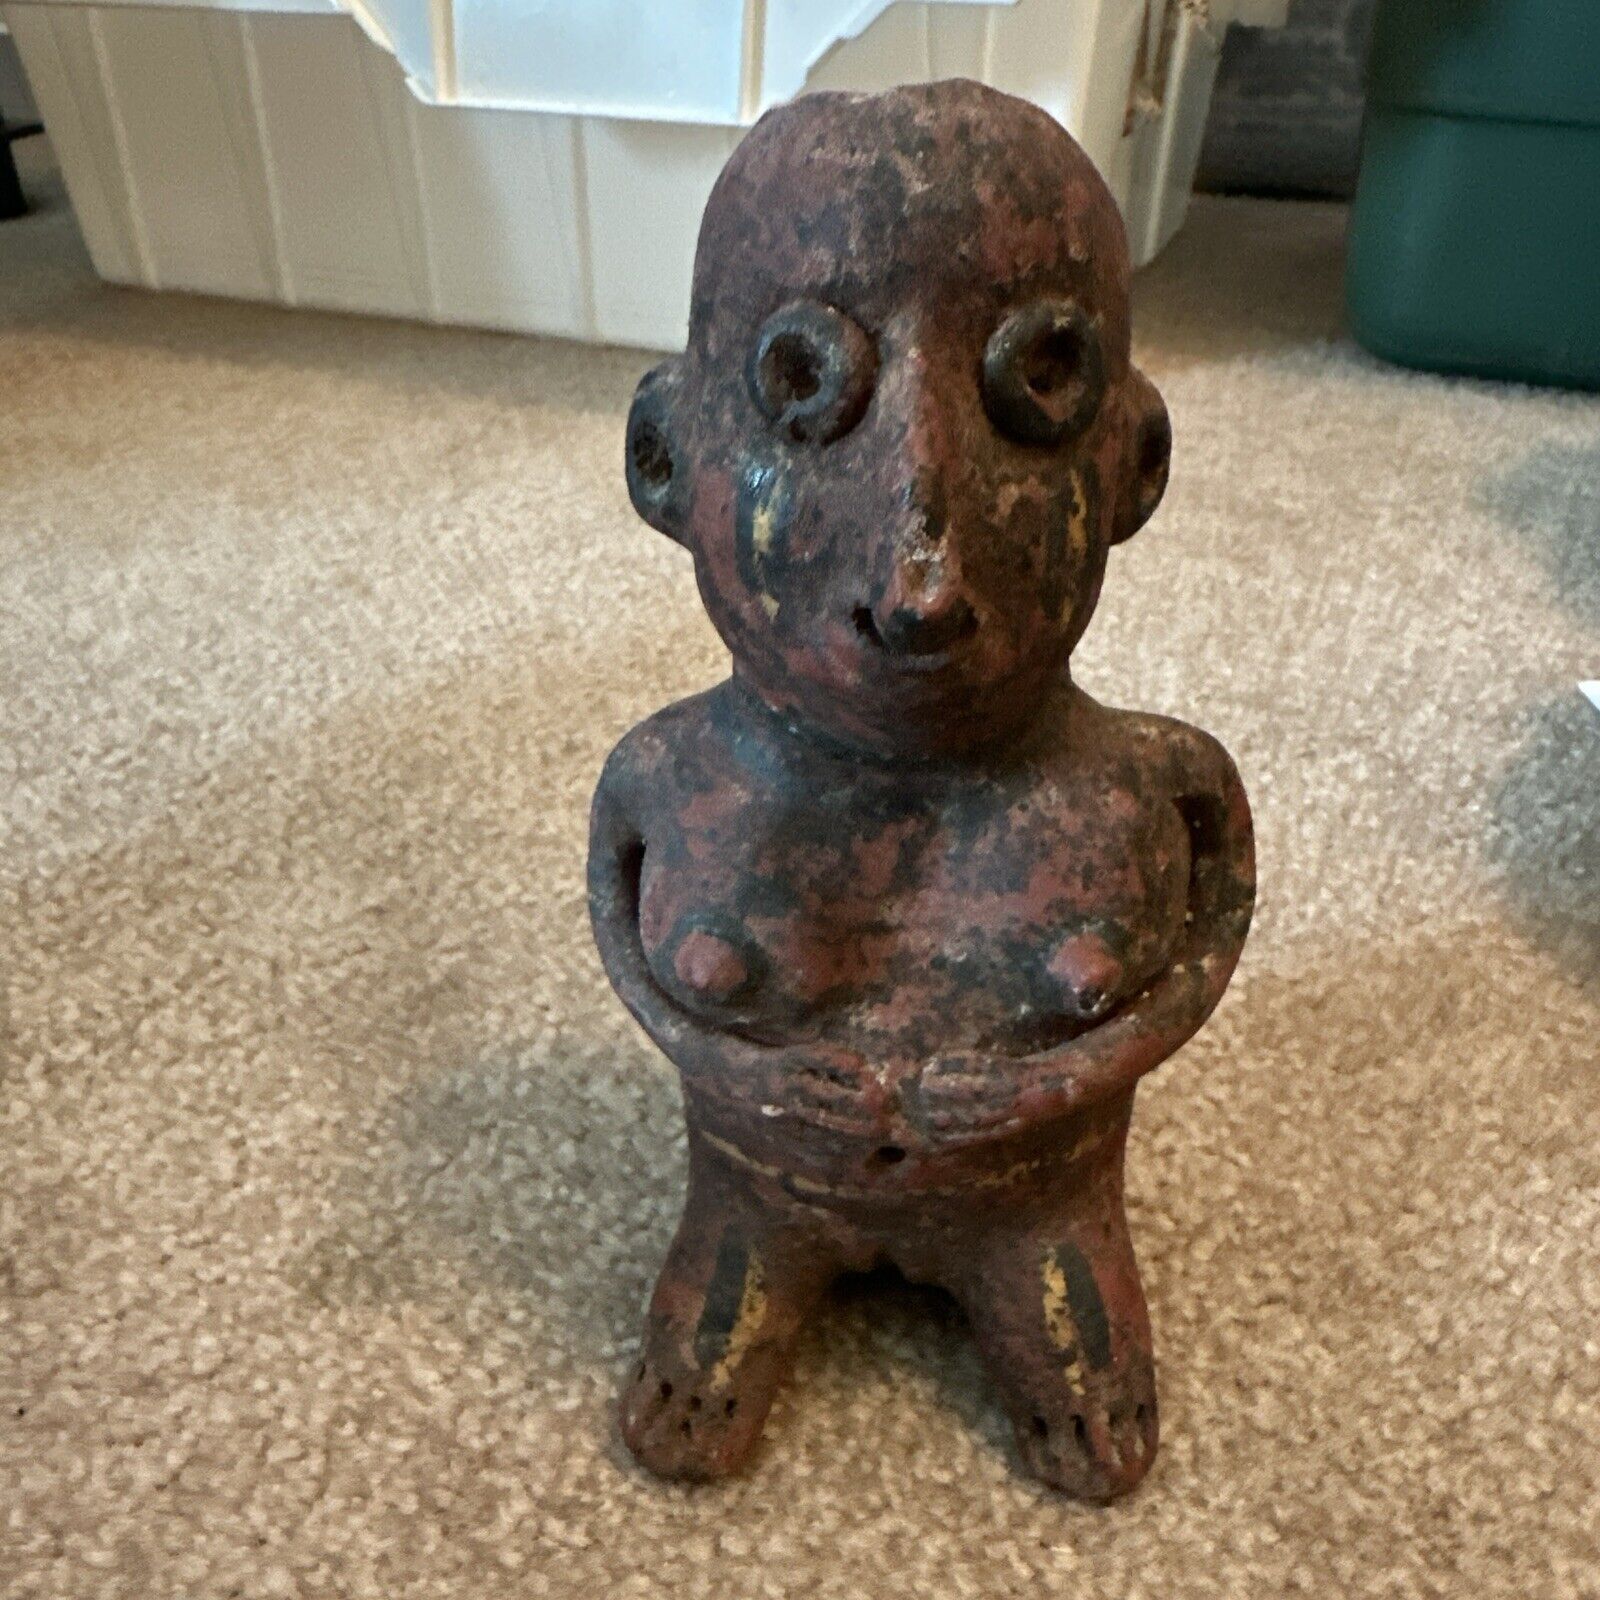 6” Vintage Inca Mayan Aztec Figurine Mexico Pottery Crude Figurine Terra Cotta